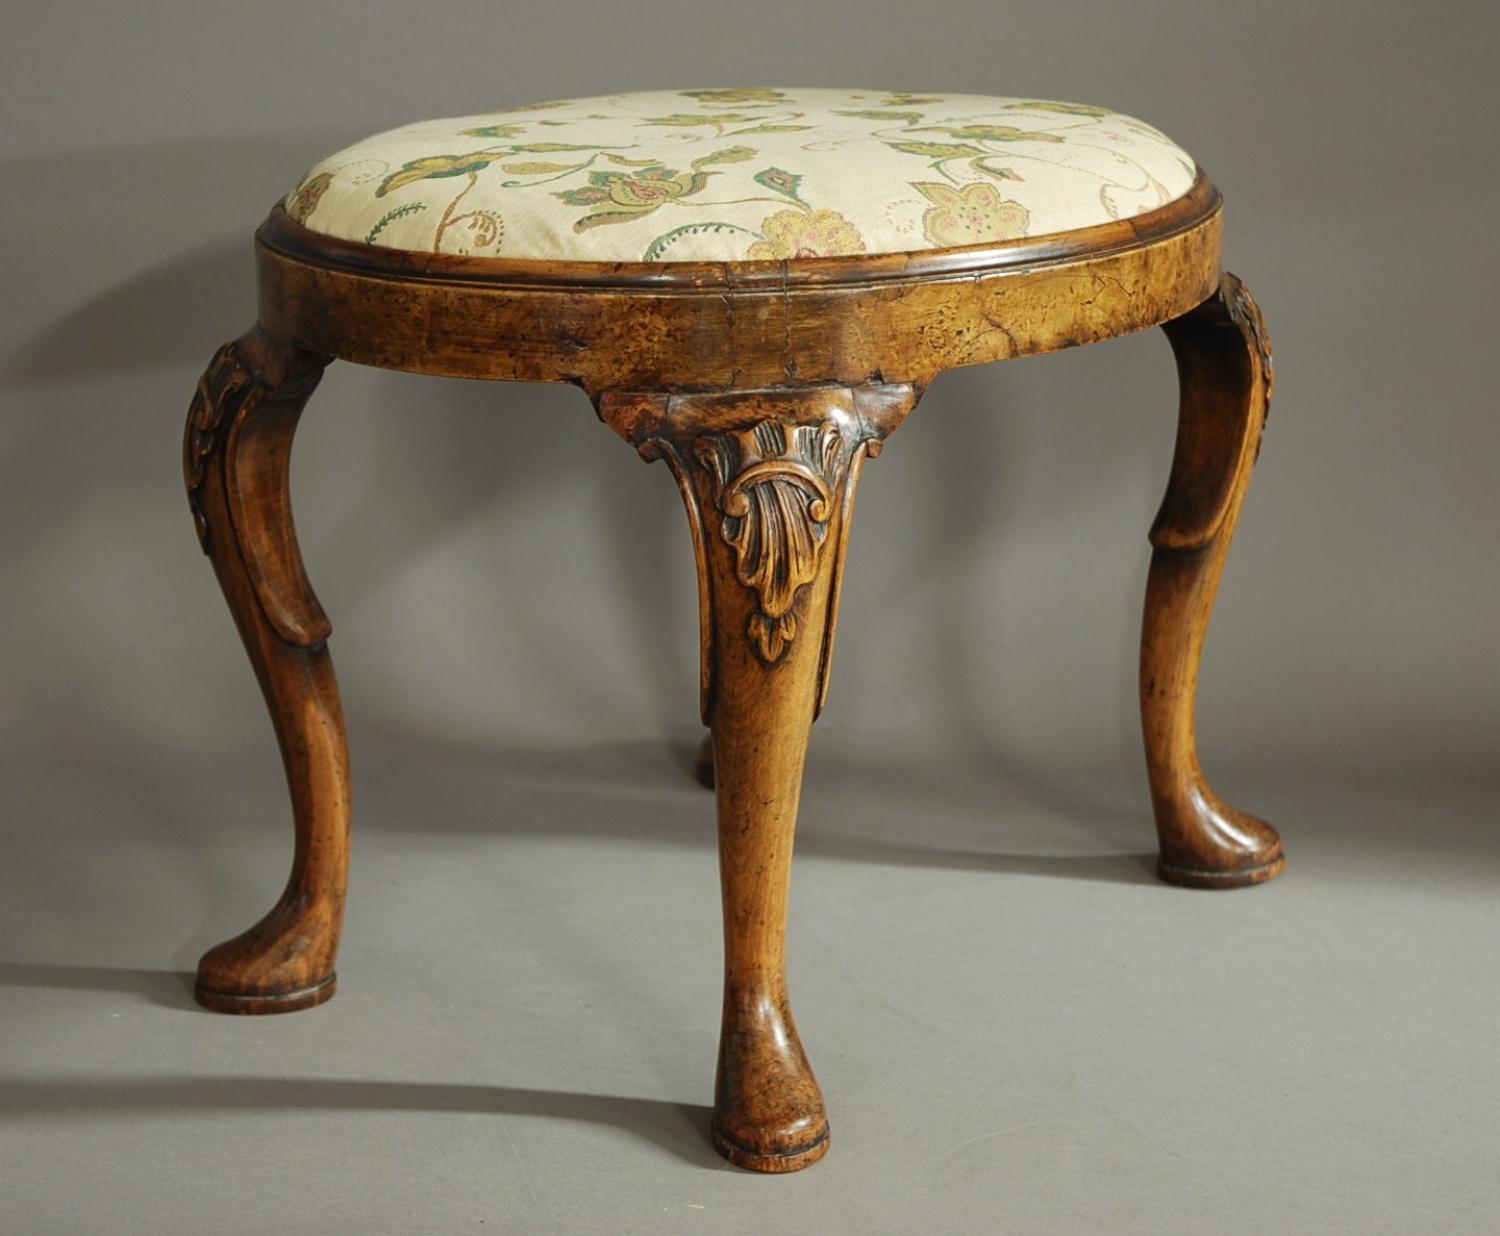 Walnut & beech stool of Queen Anne design